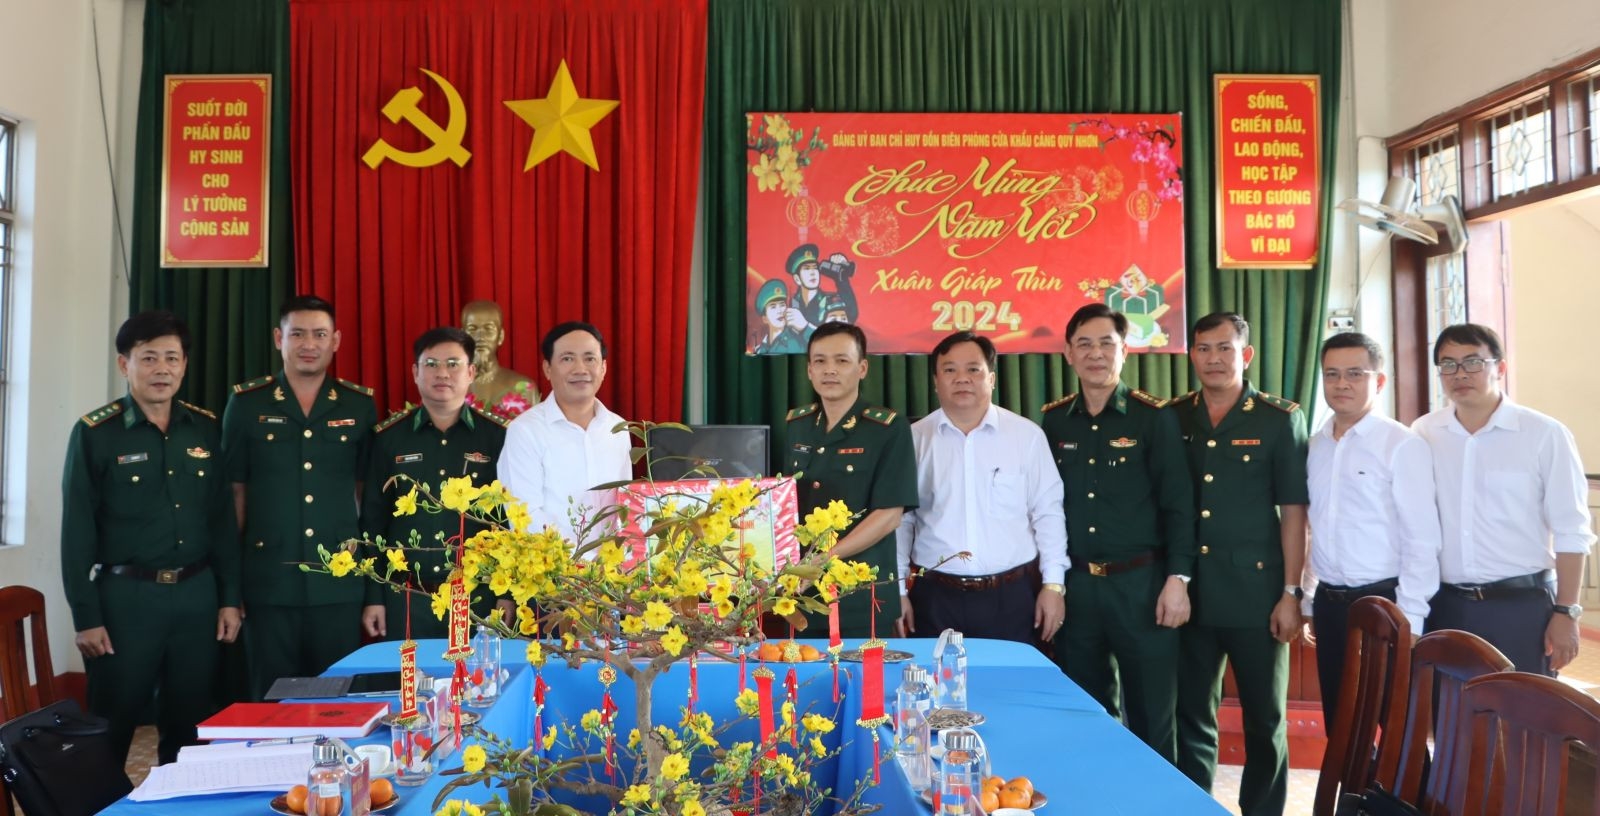 Bình Định: Chủ tịch UBND tỉnh Phạm Anh Tuấn thăm, chúc Tết các đồn biên phòng và tặng quà cho ngư dân